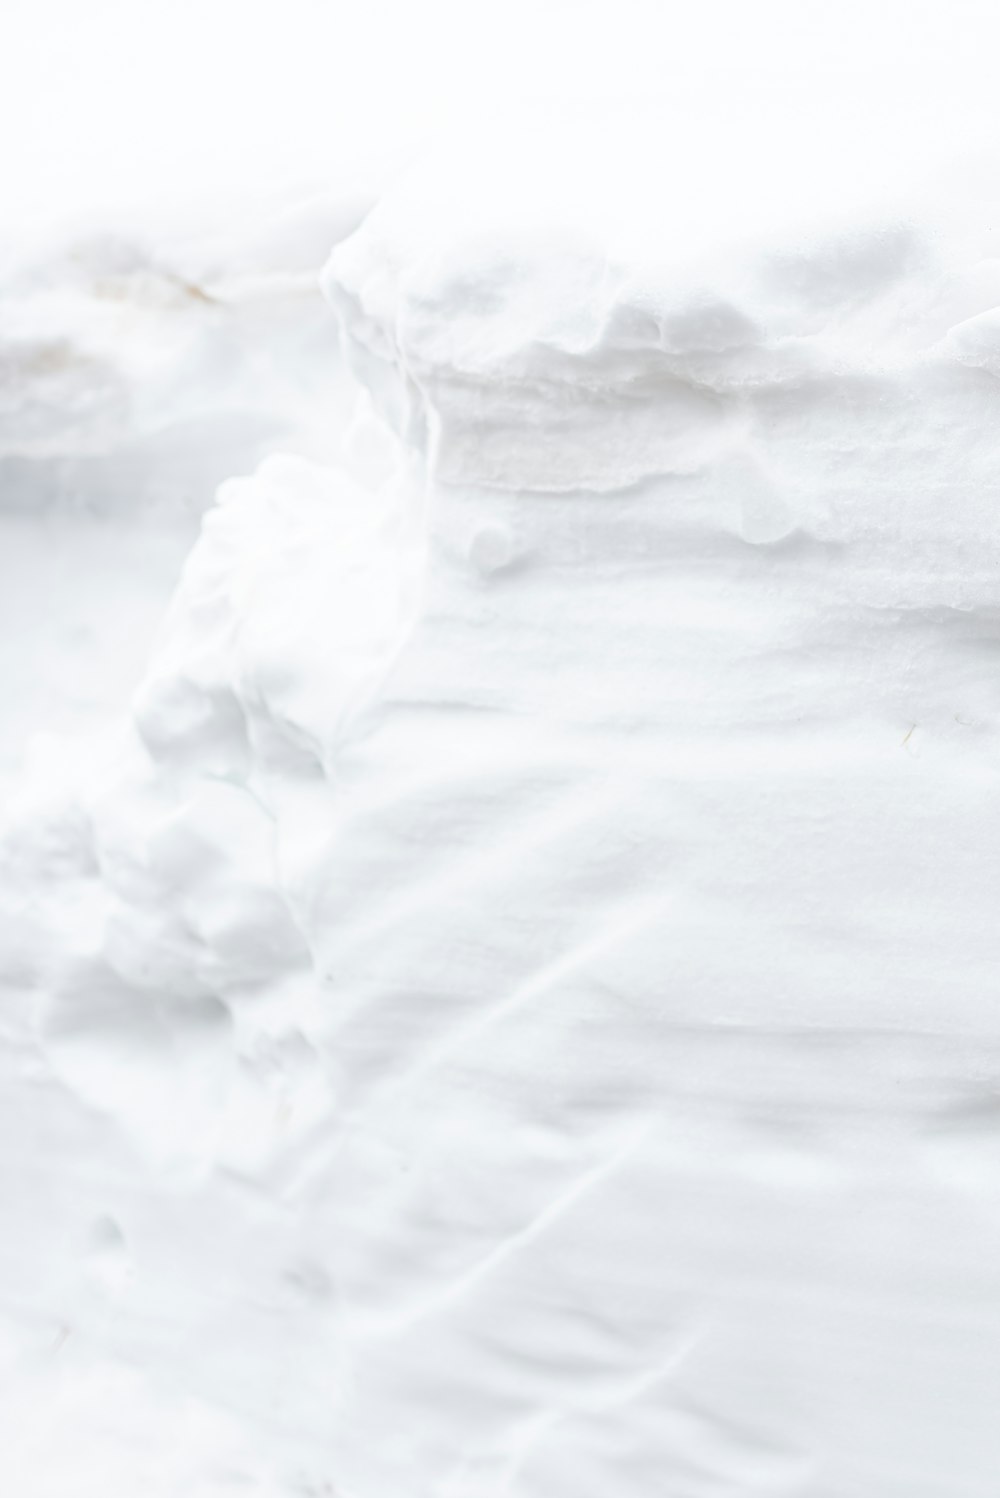 weißes Eis auf weißem Textil